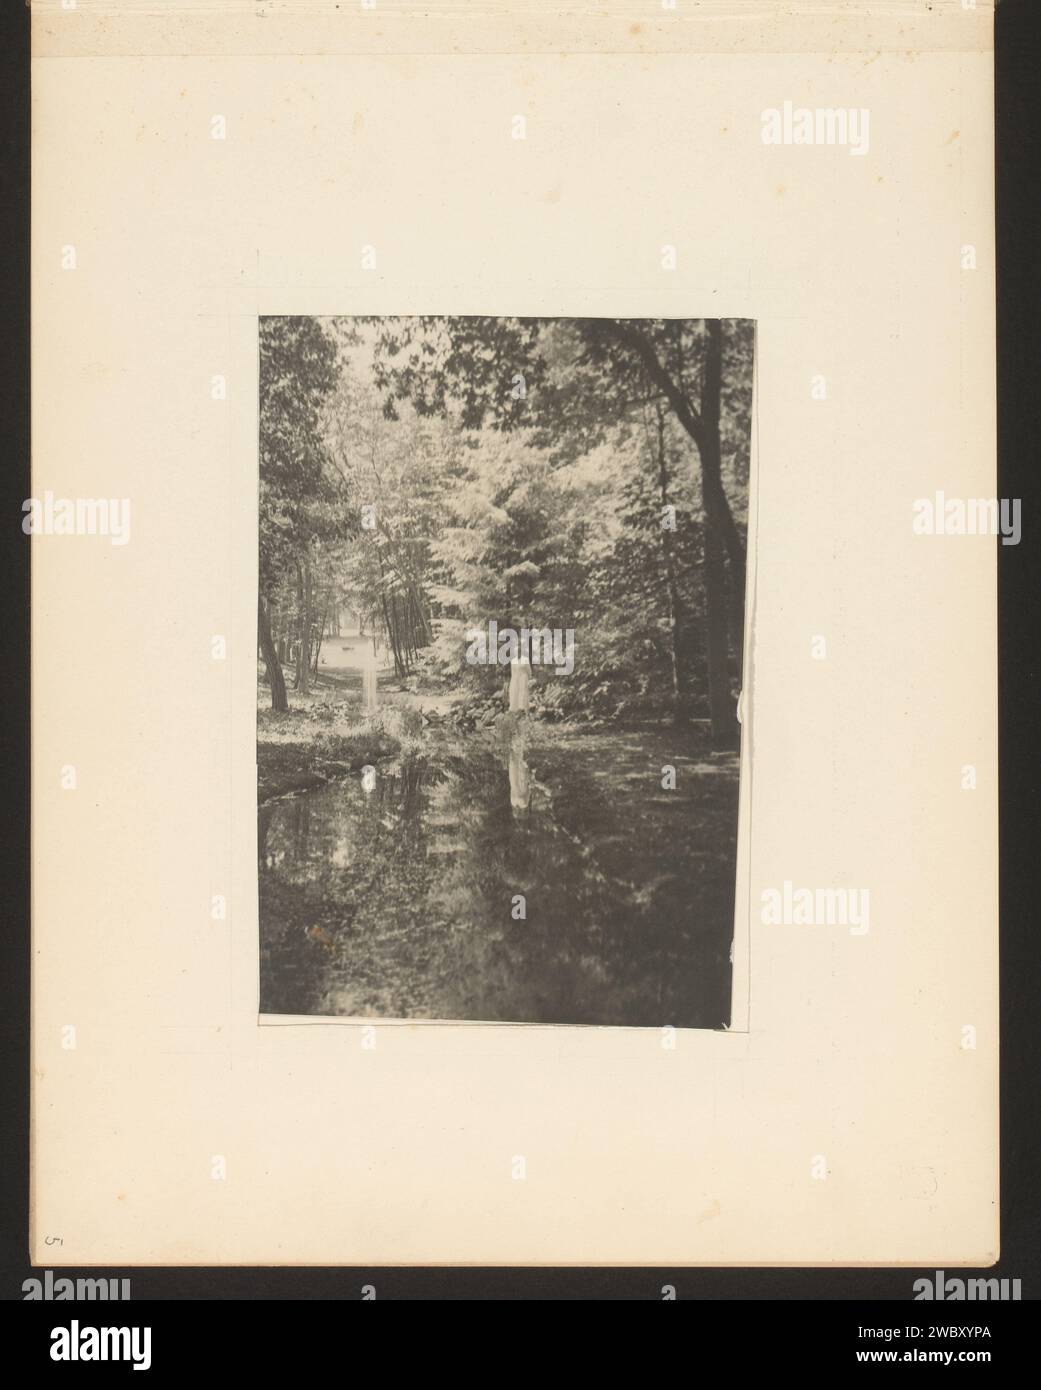 Veduta di un piccolo lago in una foresta, sulla riva c'è una persona con un abito bianco, Anonimo, 1900 - 1930 Fotografia questa foto fa parte di un album. supporto fotografico stampa gelatina argento foresta, legno. fen, Du. "ven". persone storiche Foto Stock